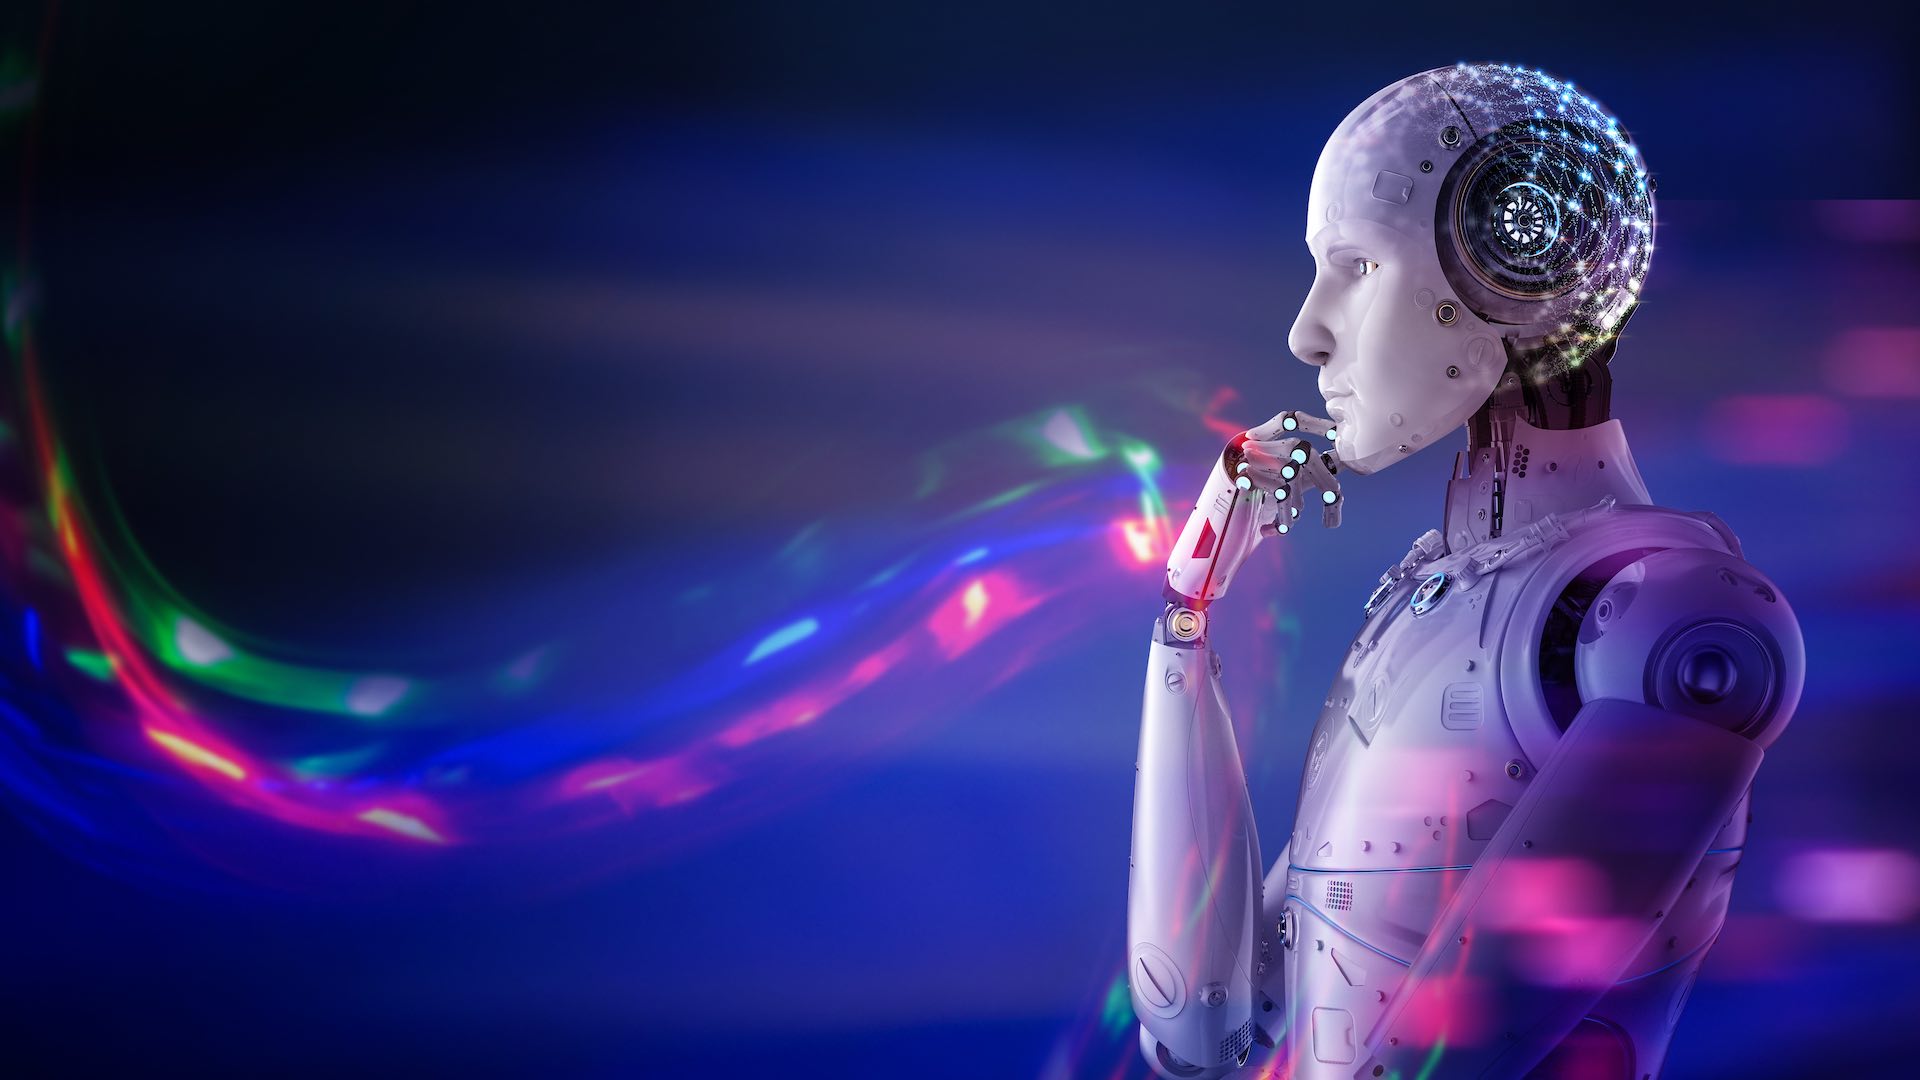 شکل دادن به فناوری فردا با 11 شرکت برتر که انقلاب هوش مصنوعی را رهبری می کنند